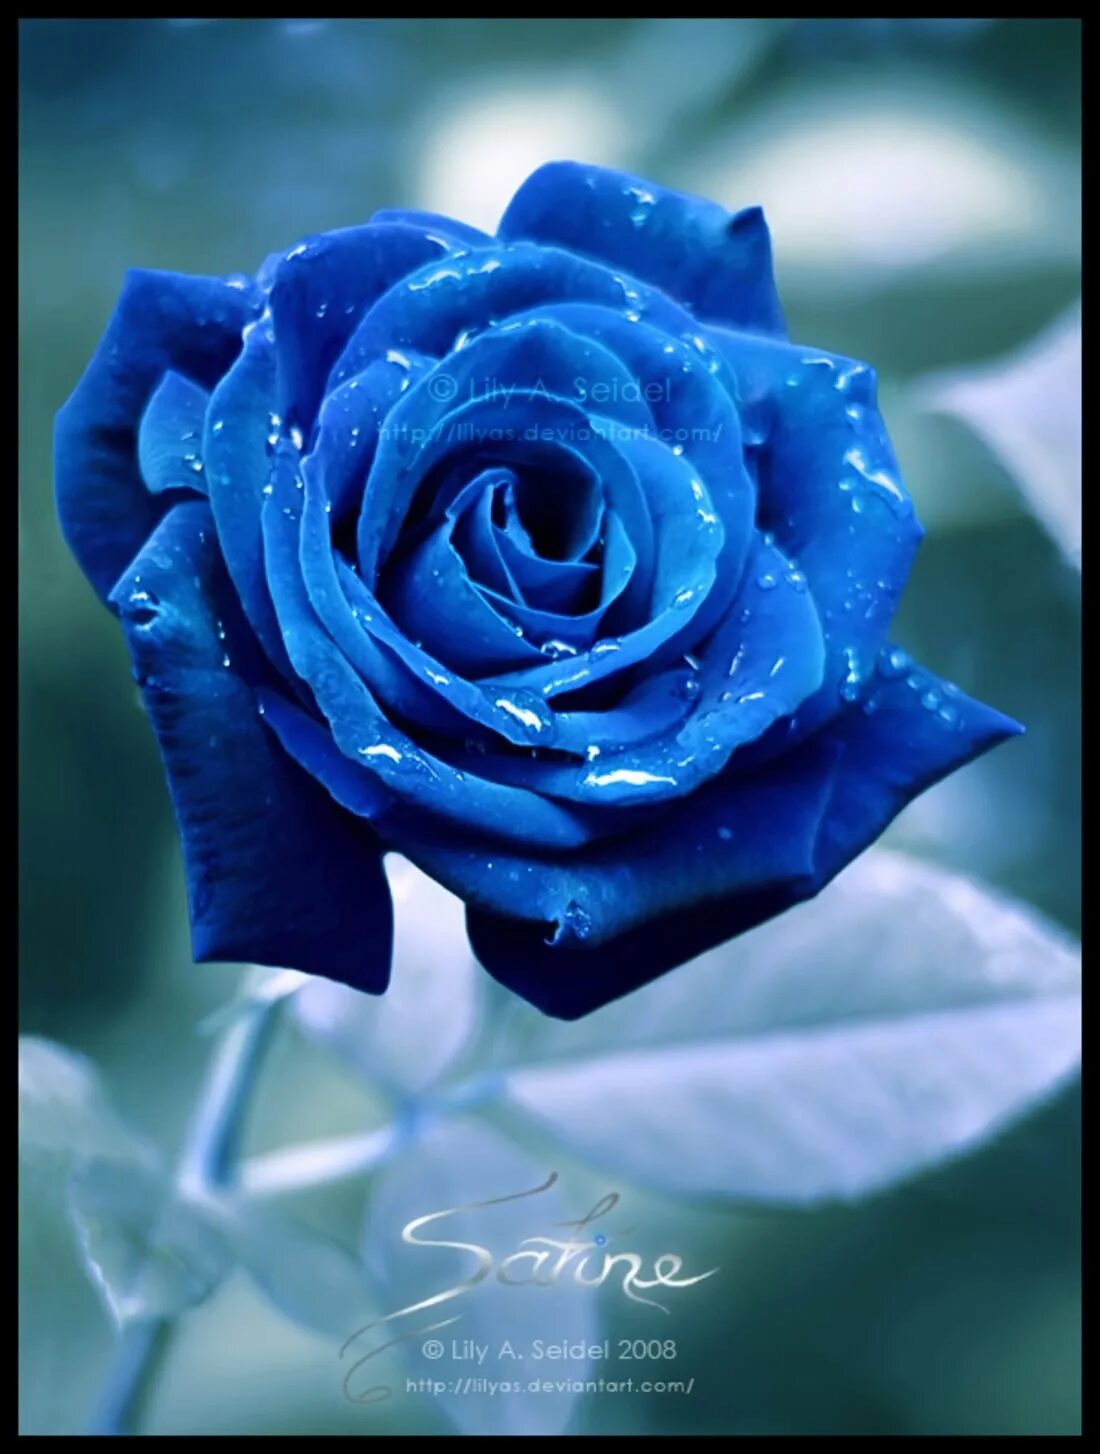 Синий самый любимый цвет. Голубые розы Сантори.